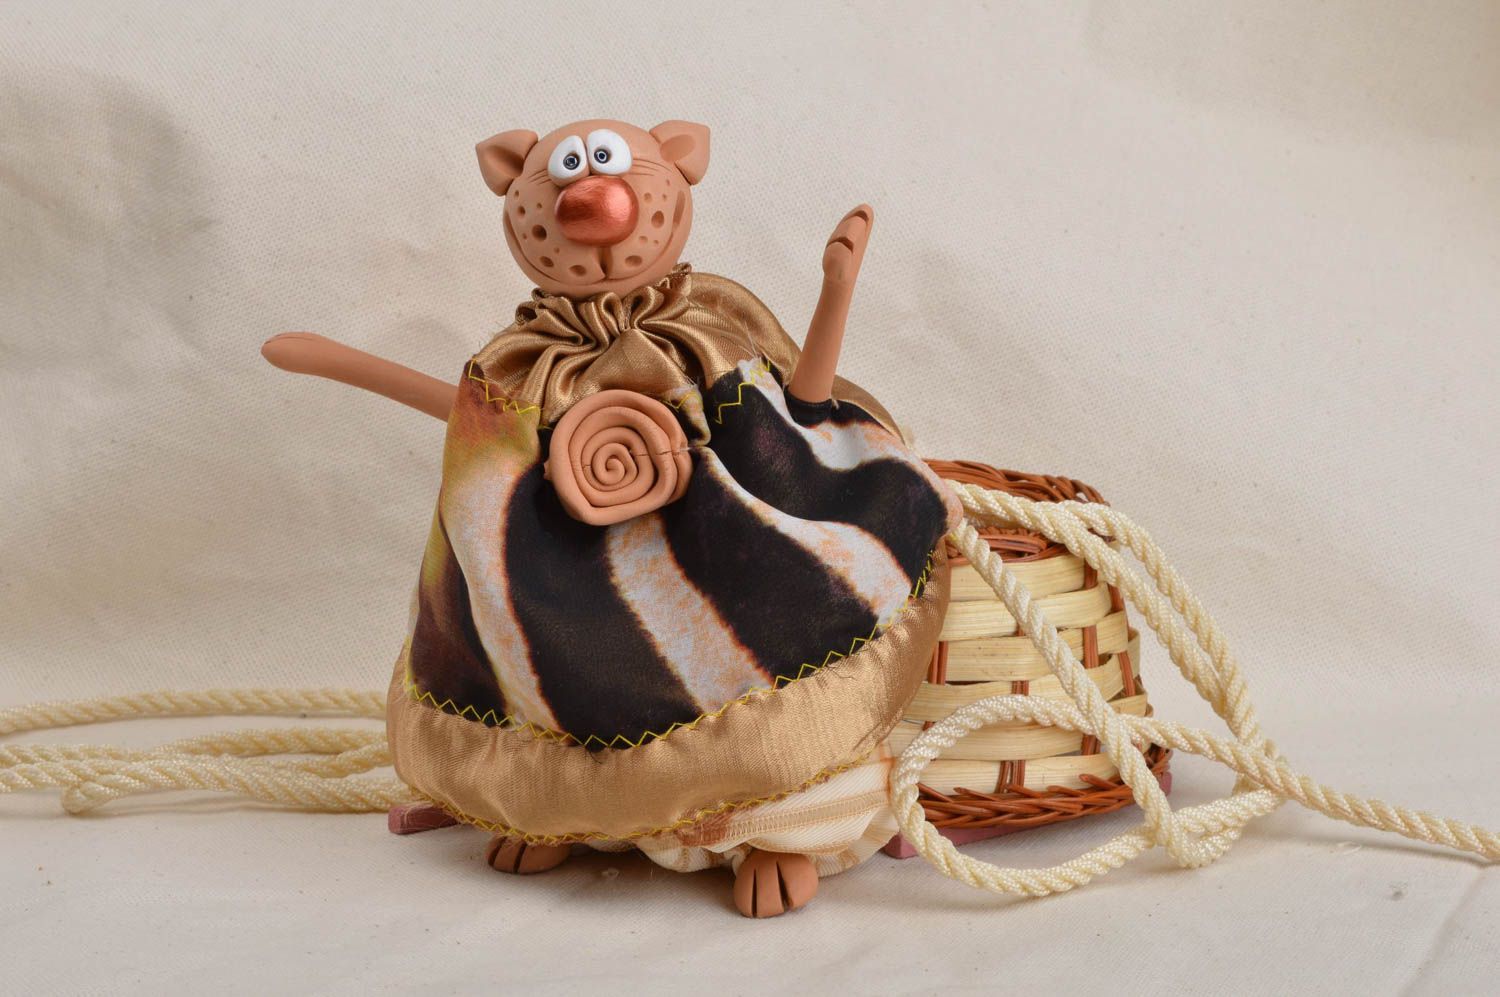 Интерьерная подвеска игрушка из глины и ткани ручной работы Модный кот фото 1